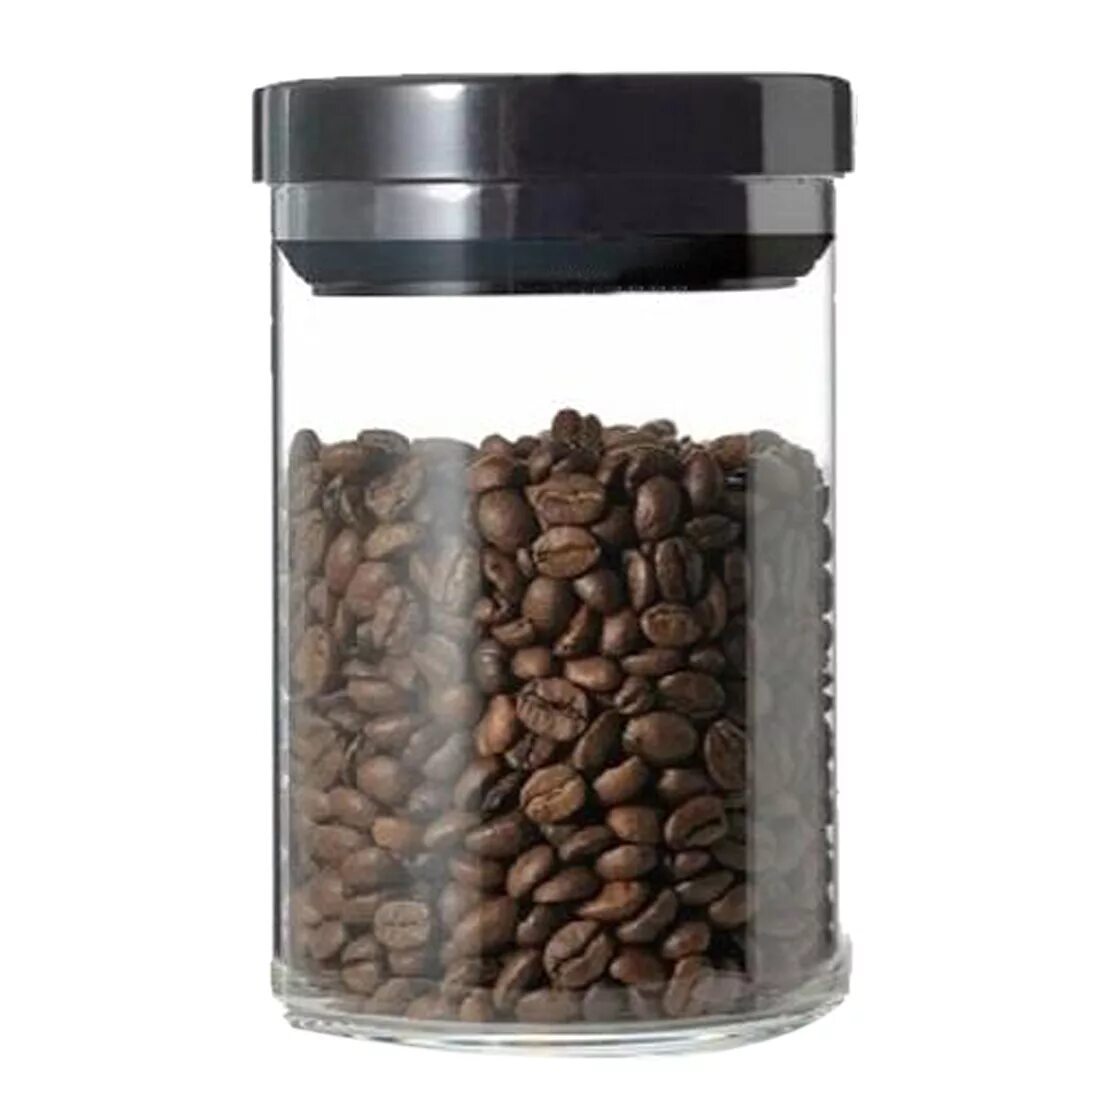 Баночка для кофе. Банка для кофе. Банки для зернового кофе. Кофейные зерна в стеклянной банке. Банка для зернового кофе.